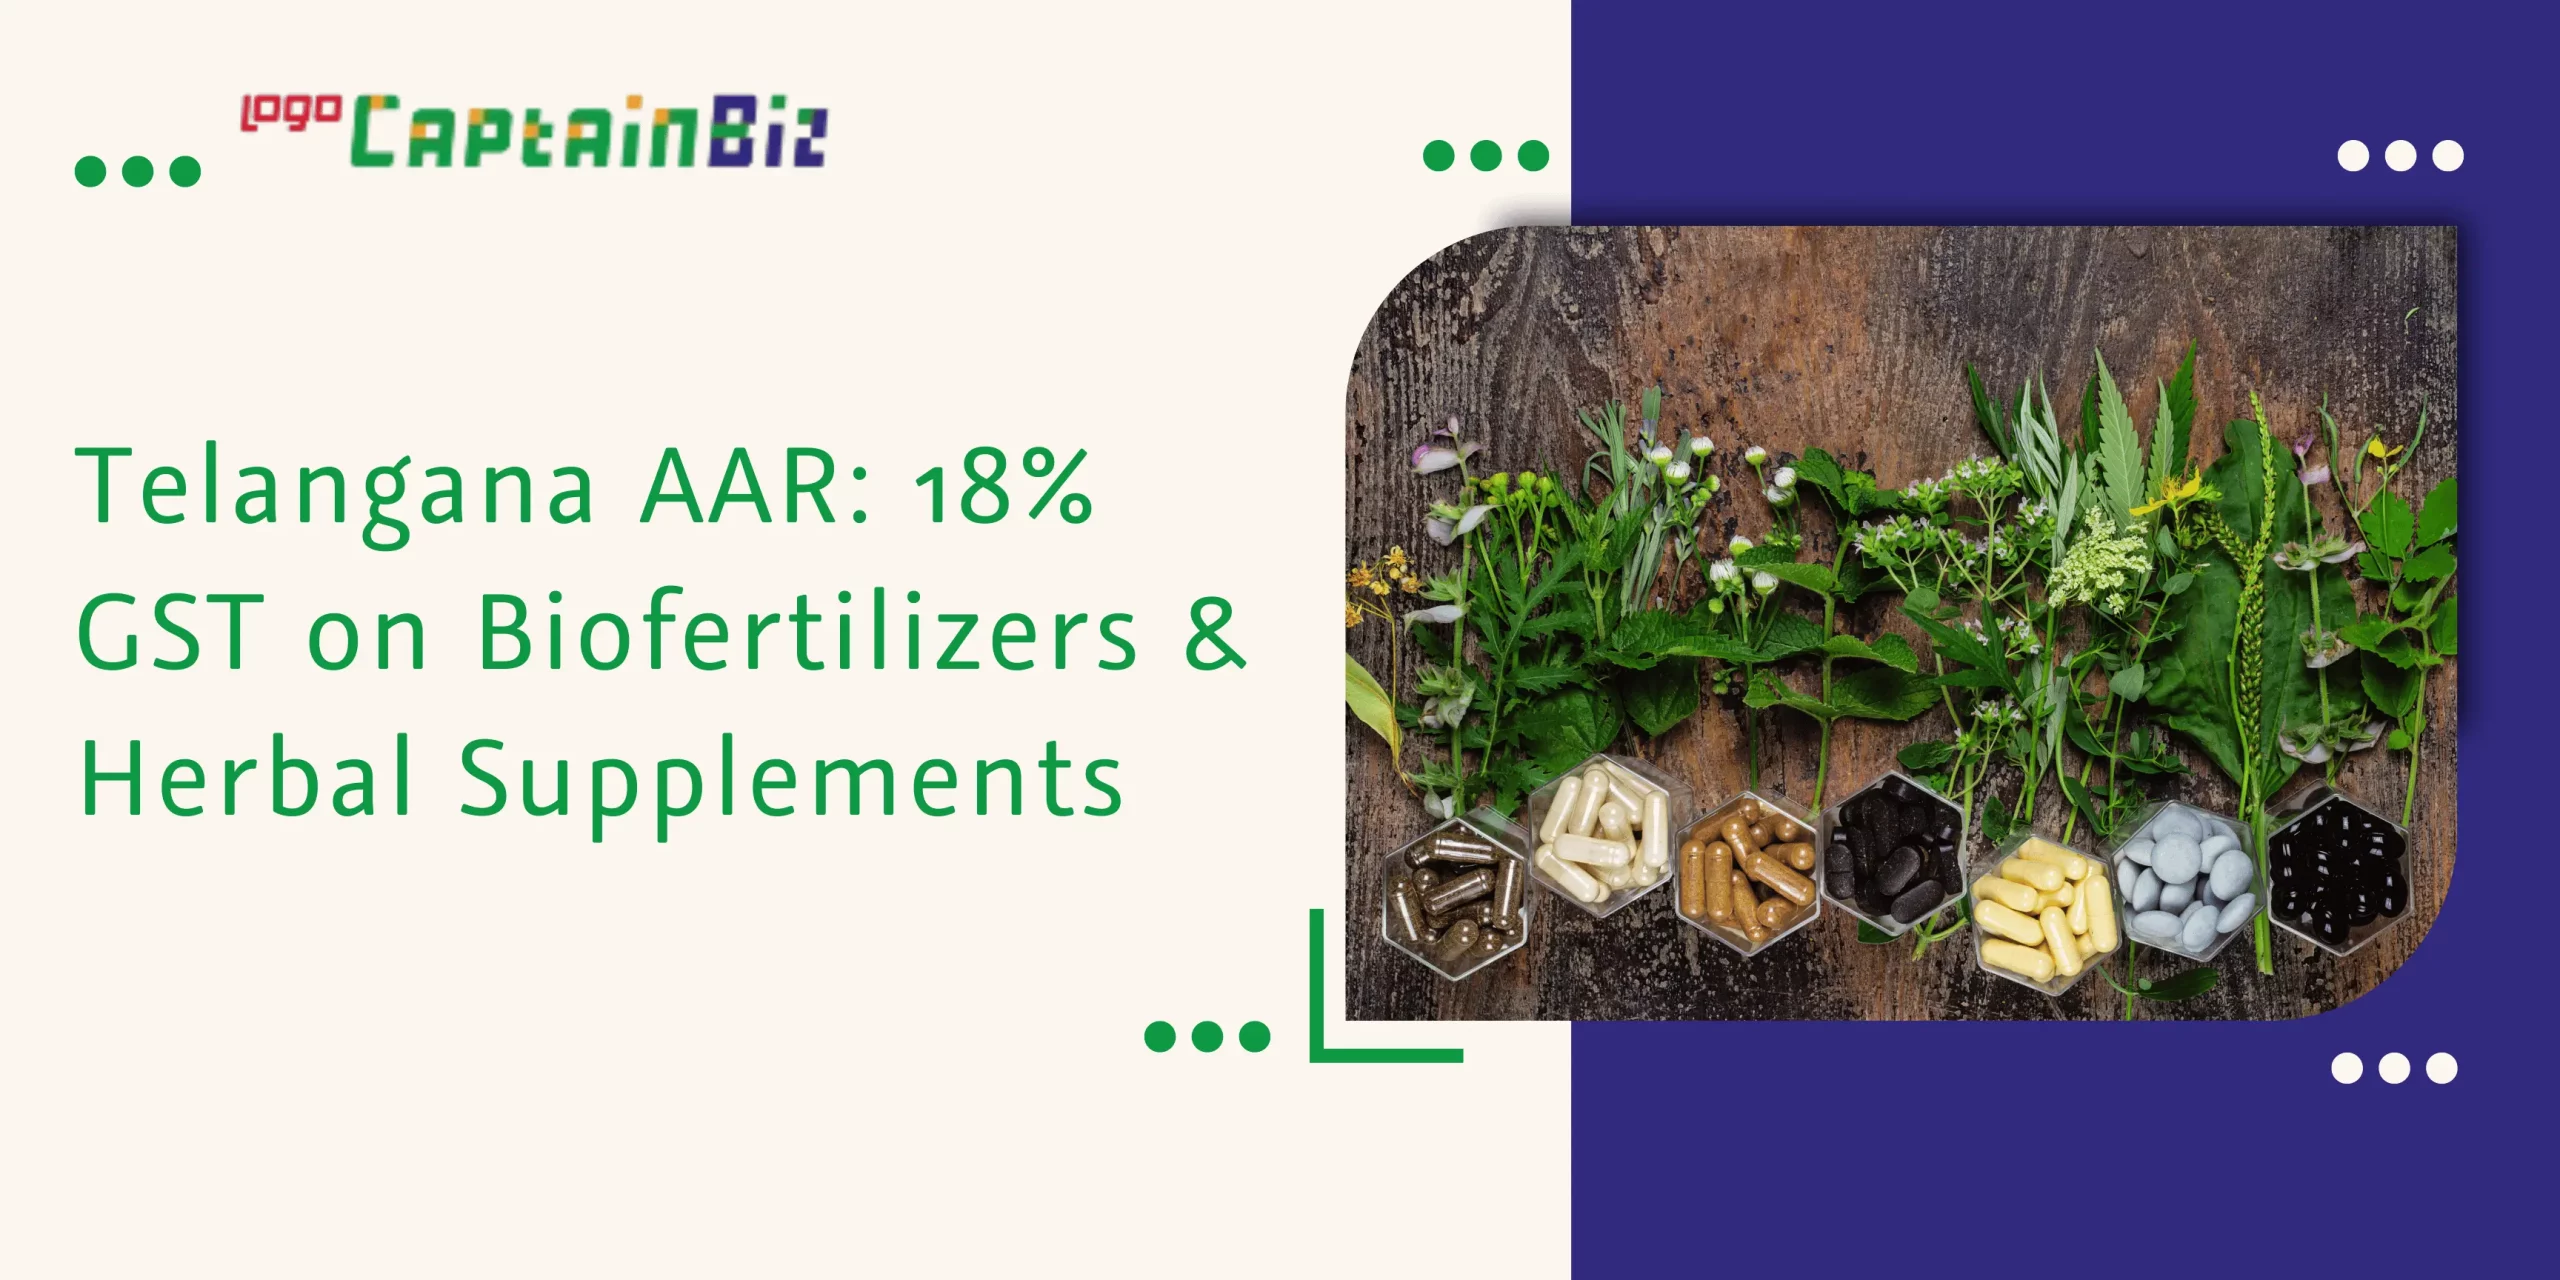 CaptainBiz: telangana AAR: 18% GST on biofertilizers & herbal supplements